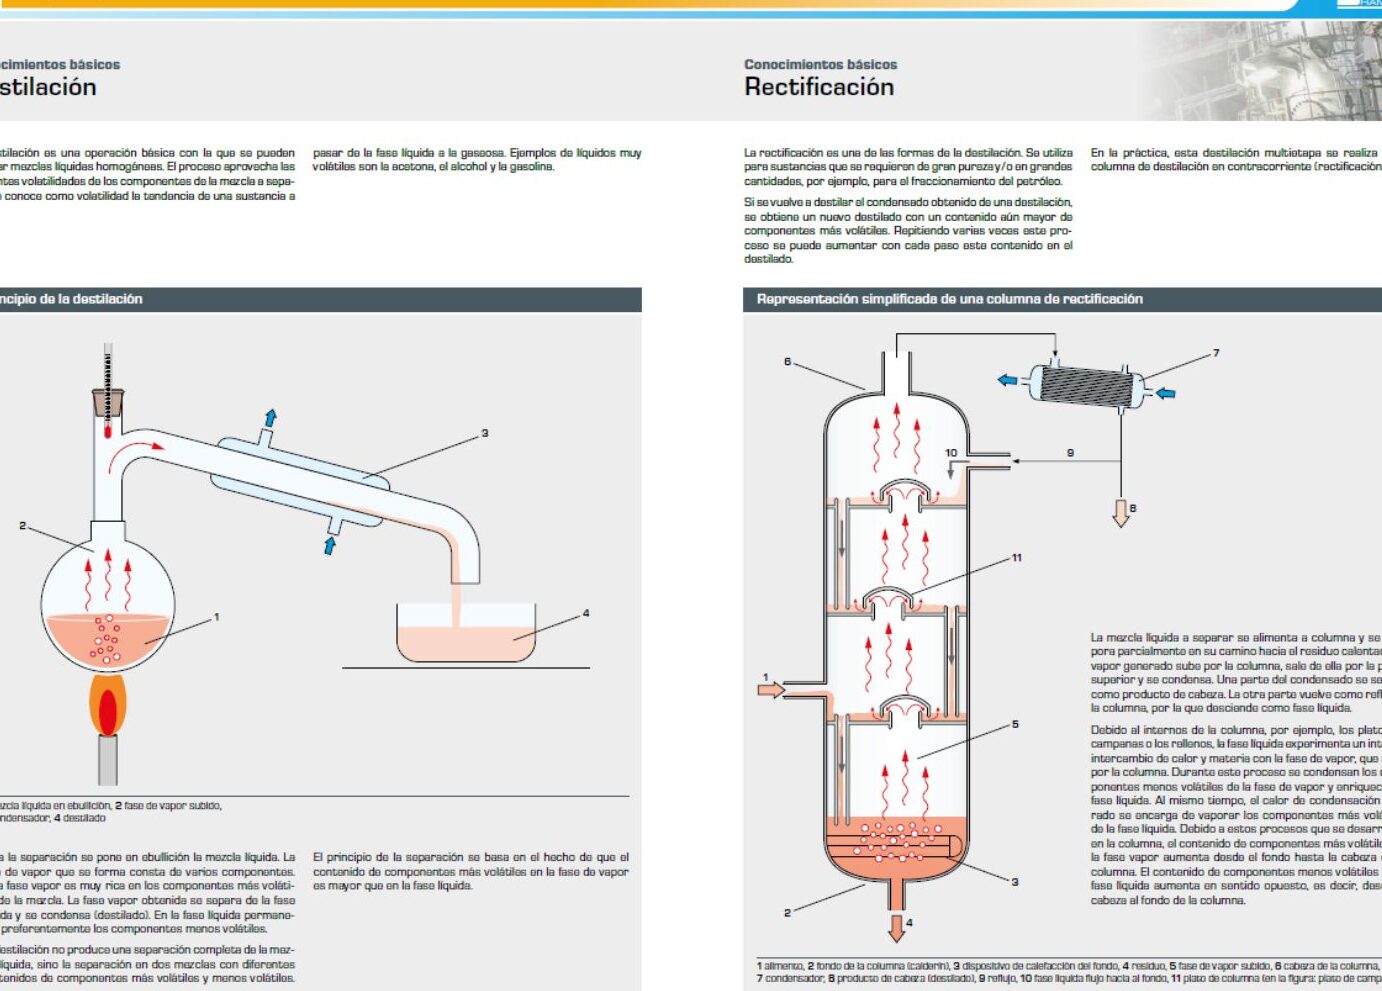 Diagrama de distilare: Un pas cu pas pentru separarea lichidelor.